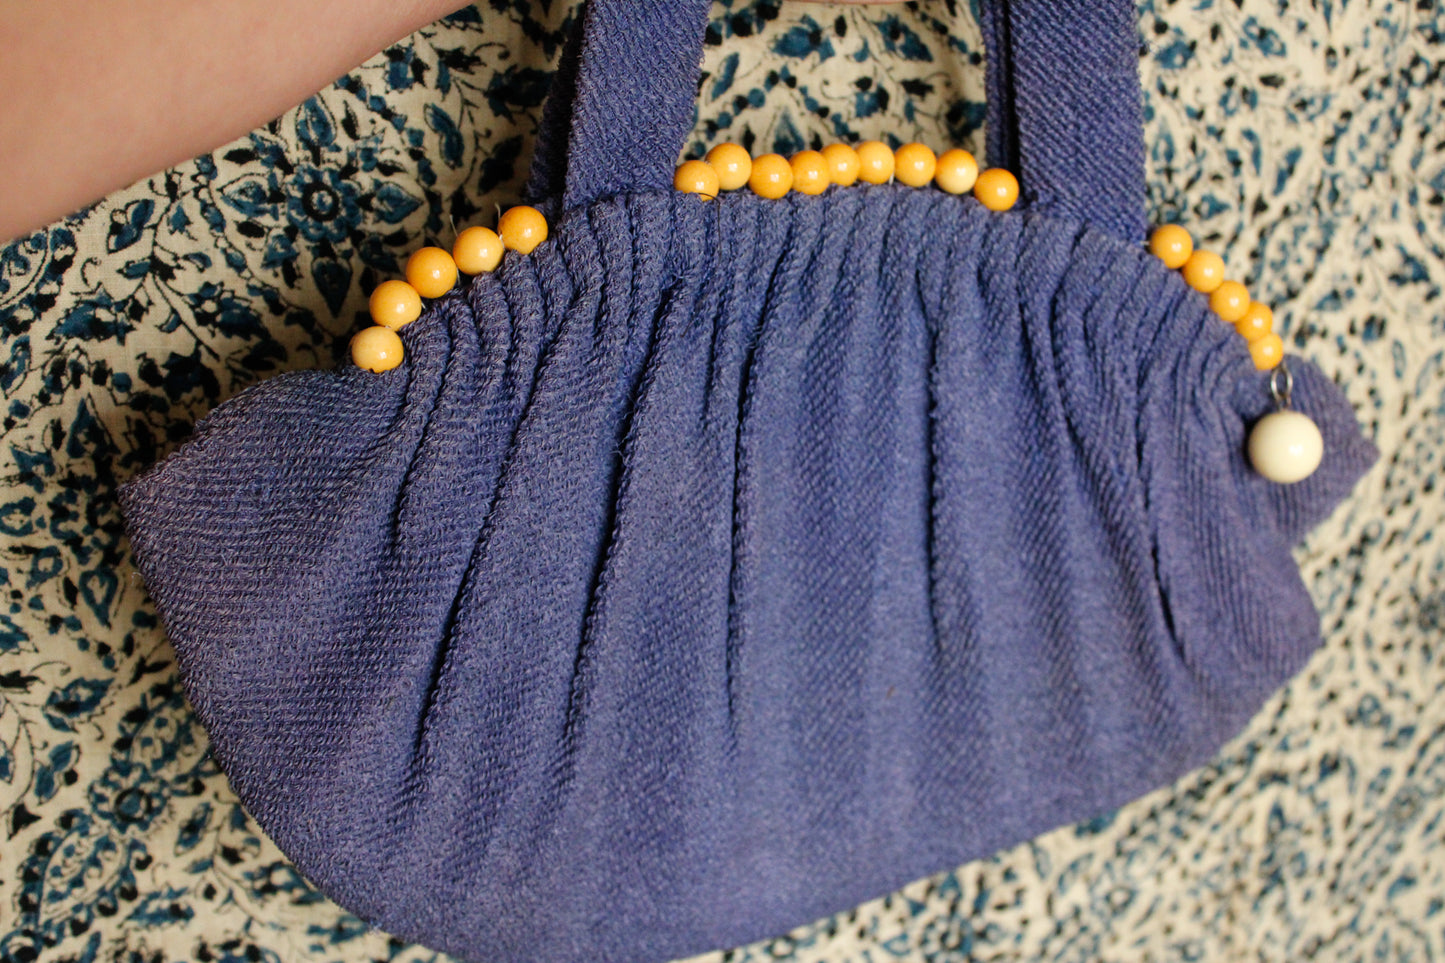 1930s Woven Handbag with Bakelite Details